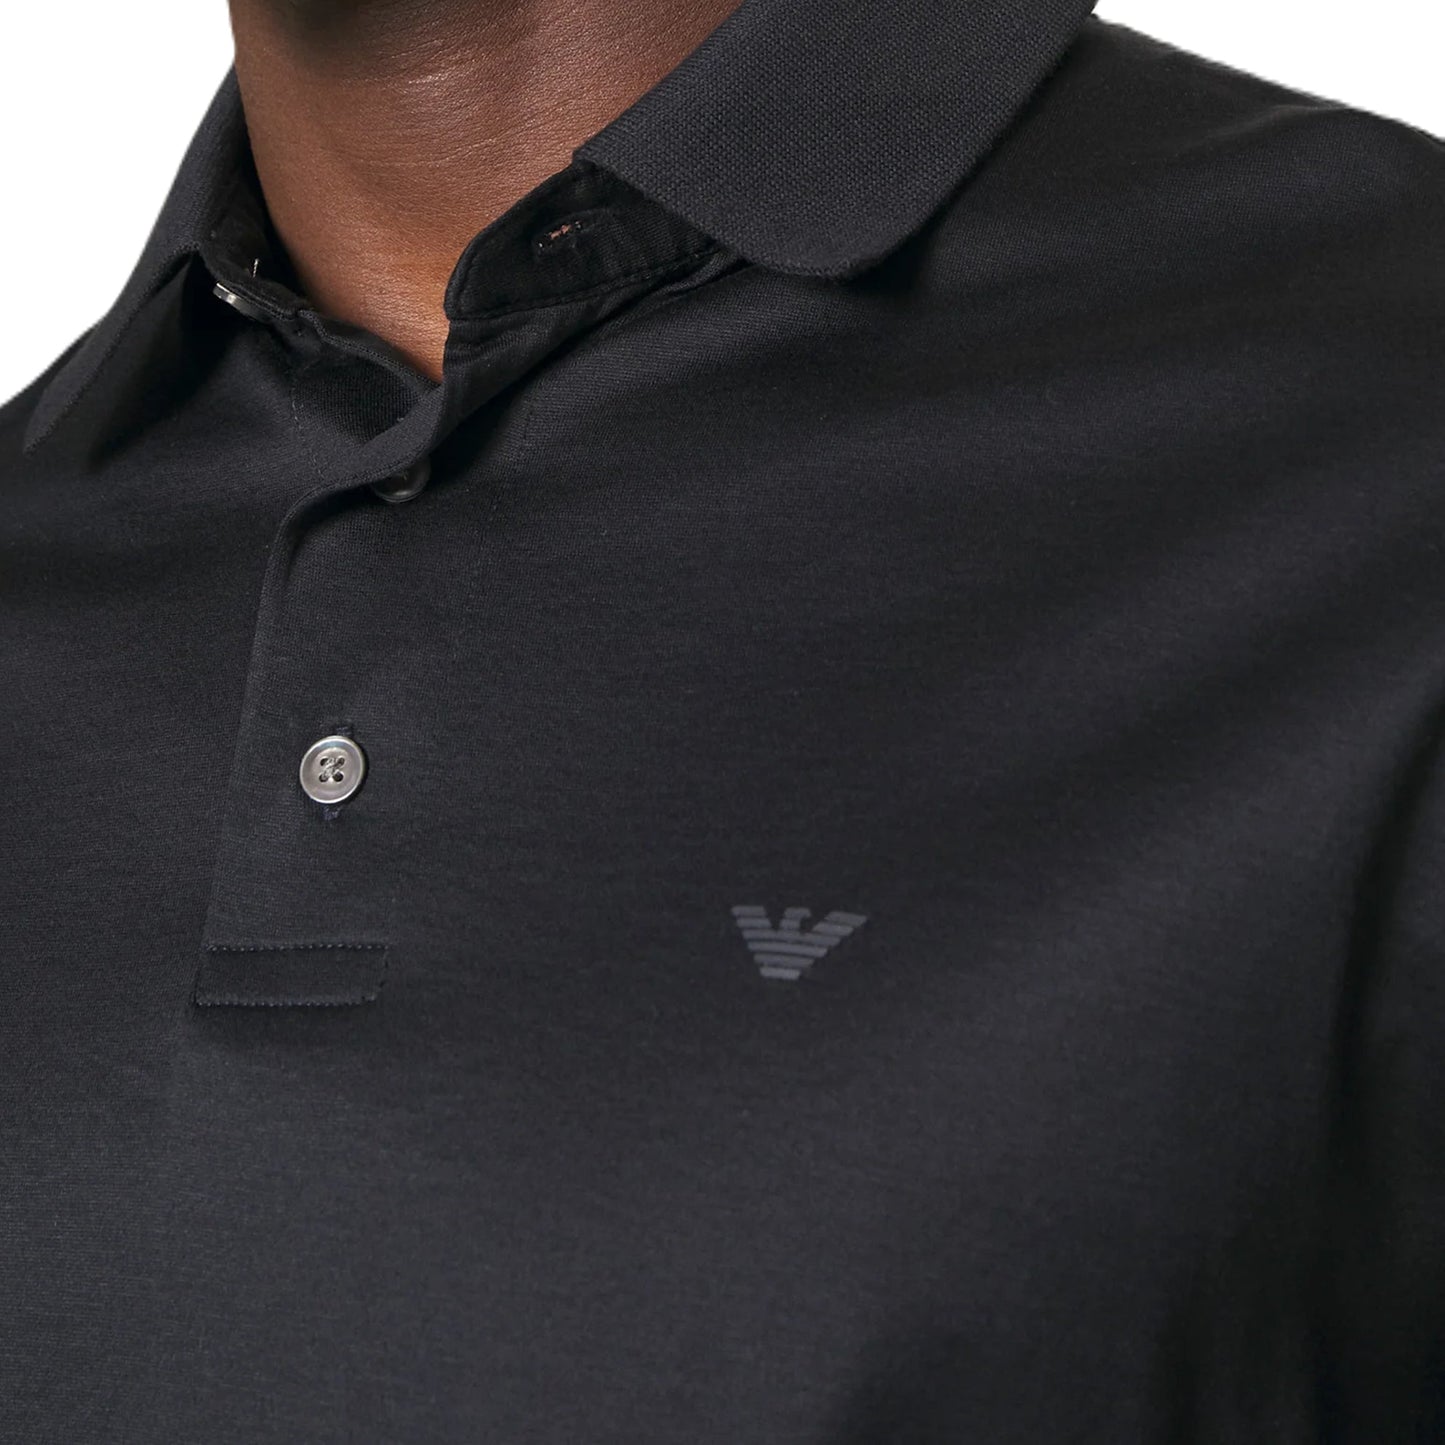 Emporio Armani Short Sleeve Jersey Polo - Navy - Escape Menswear